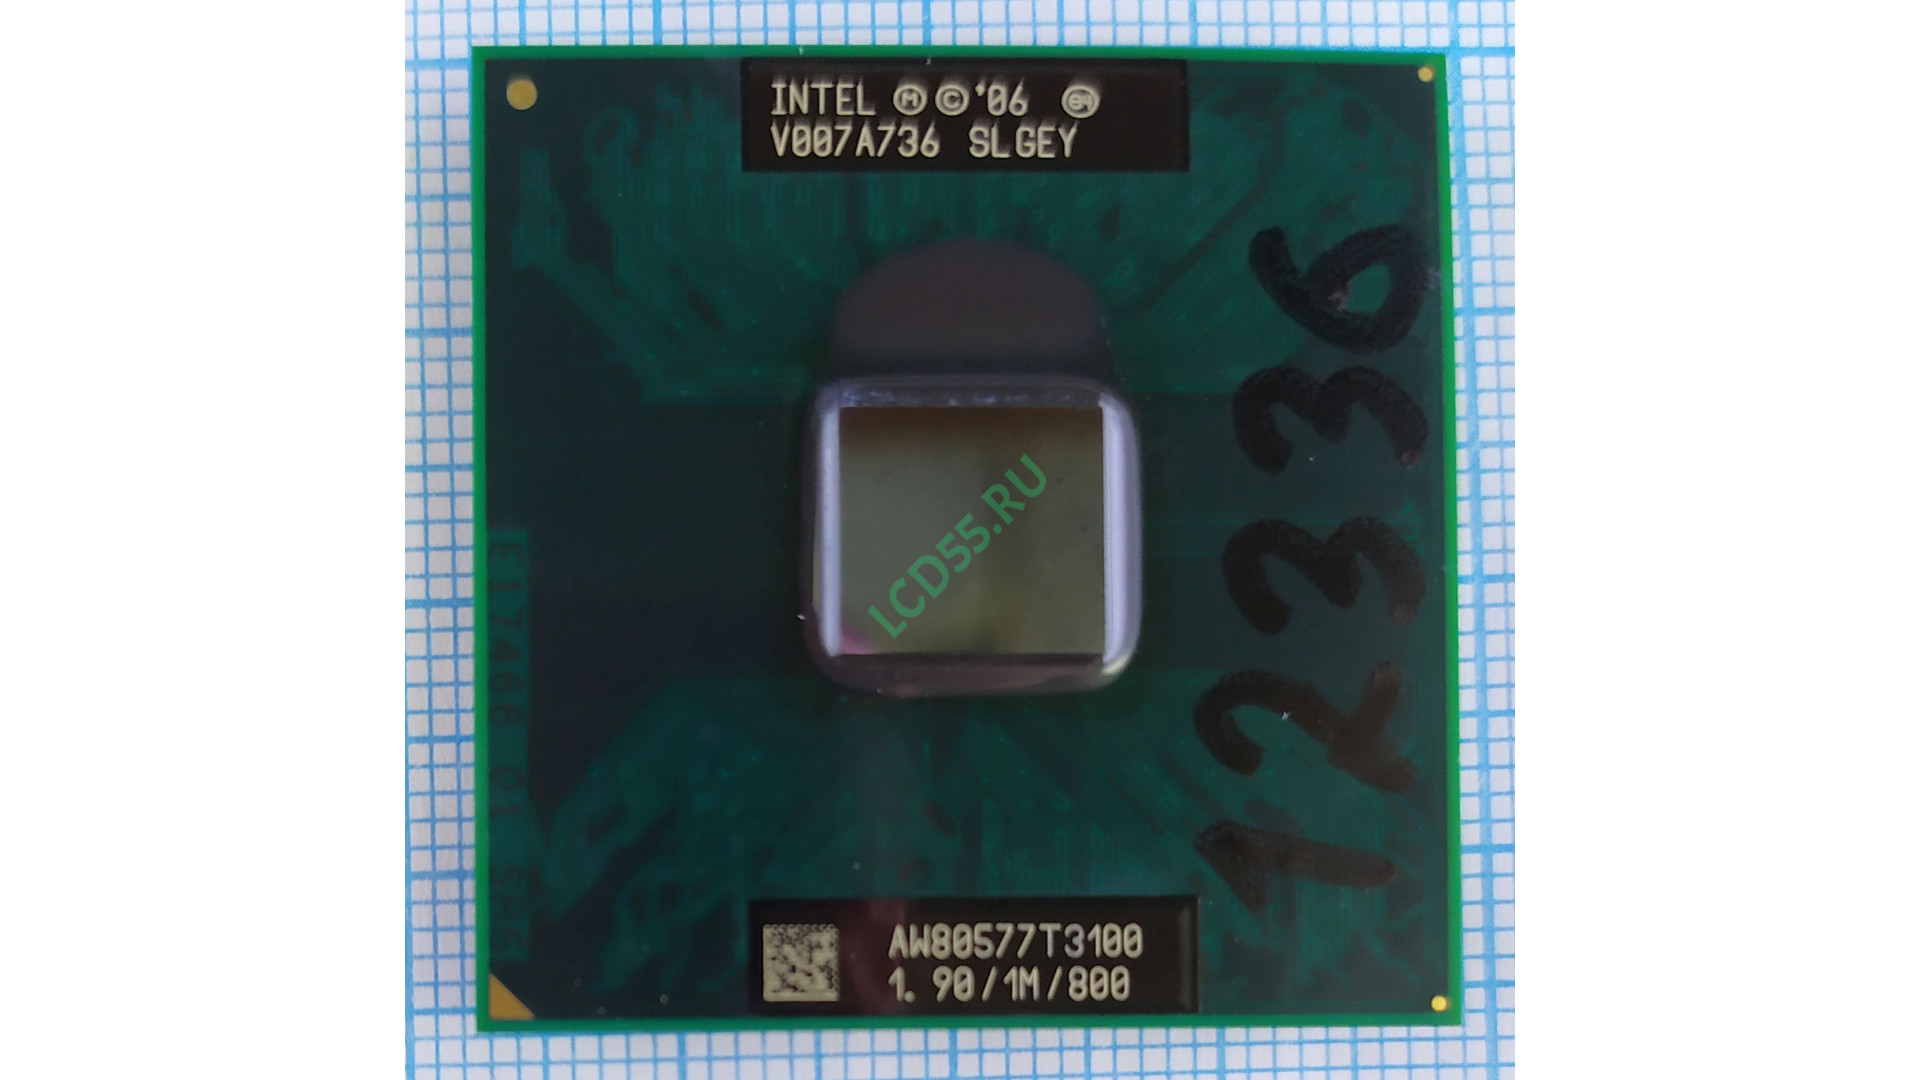 Intel Mobile Celeron Dual-Core T3100 SLGEY 1.9 GHz